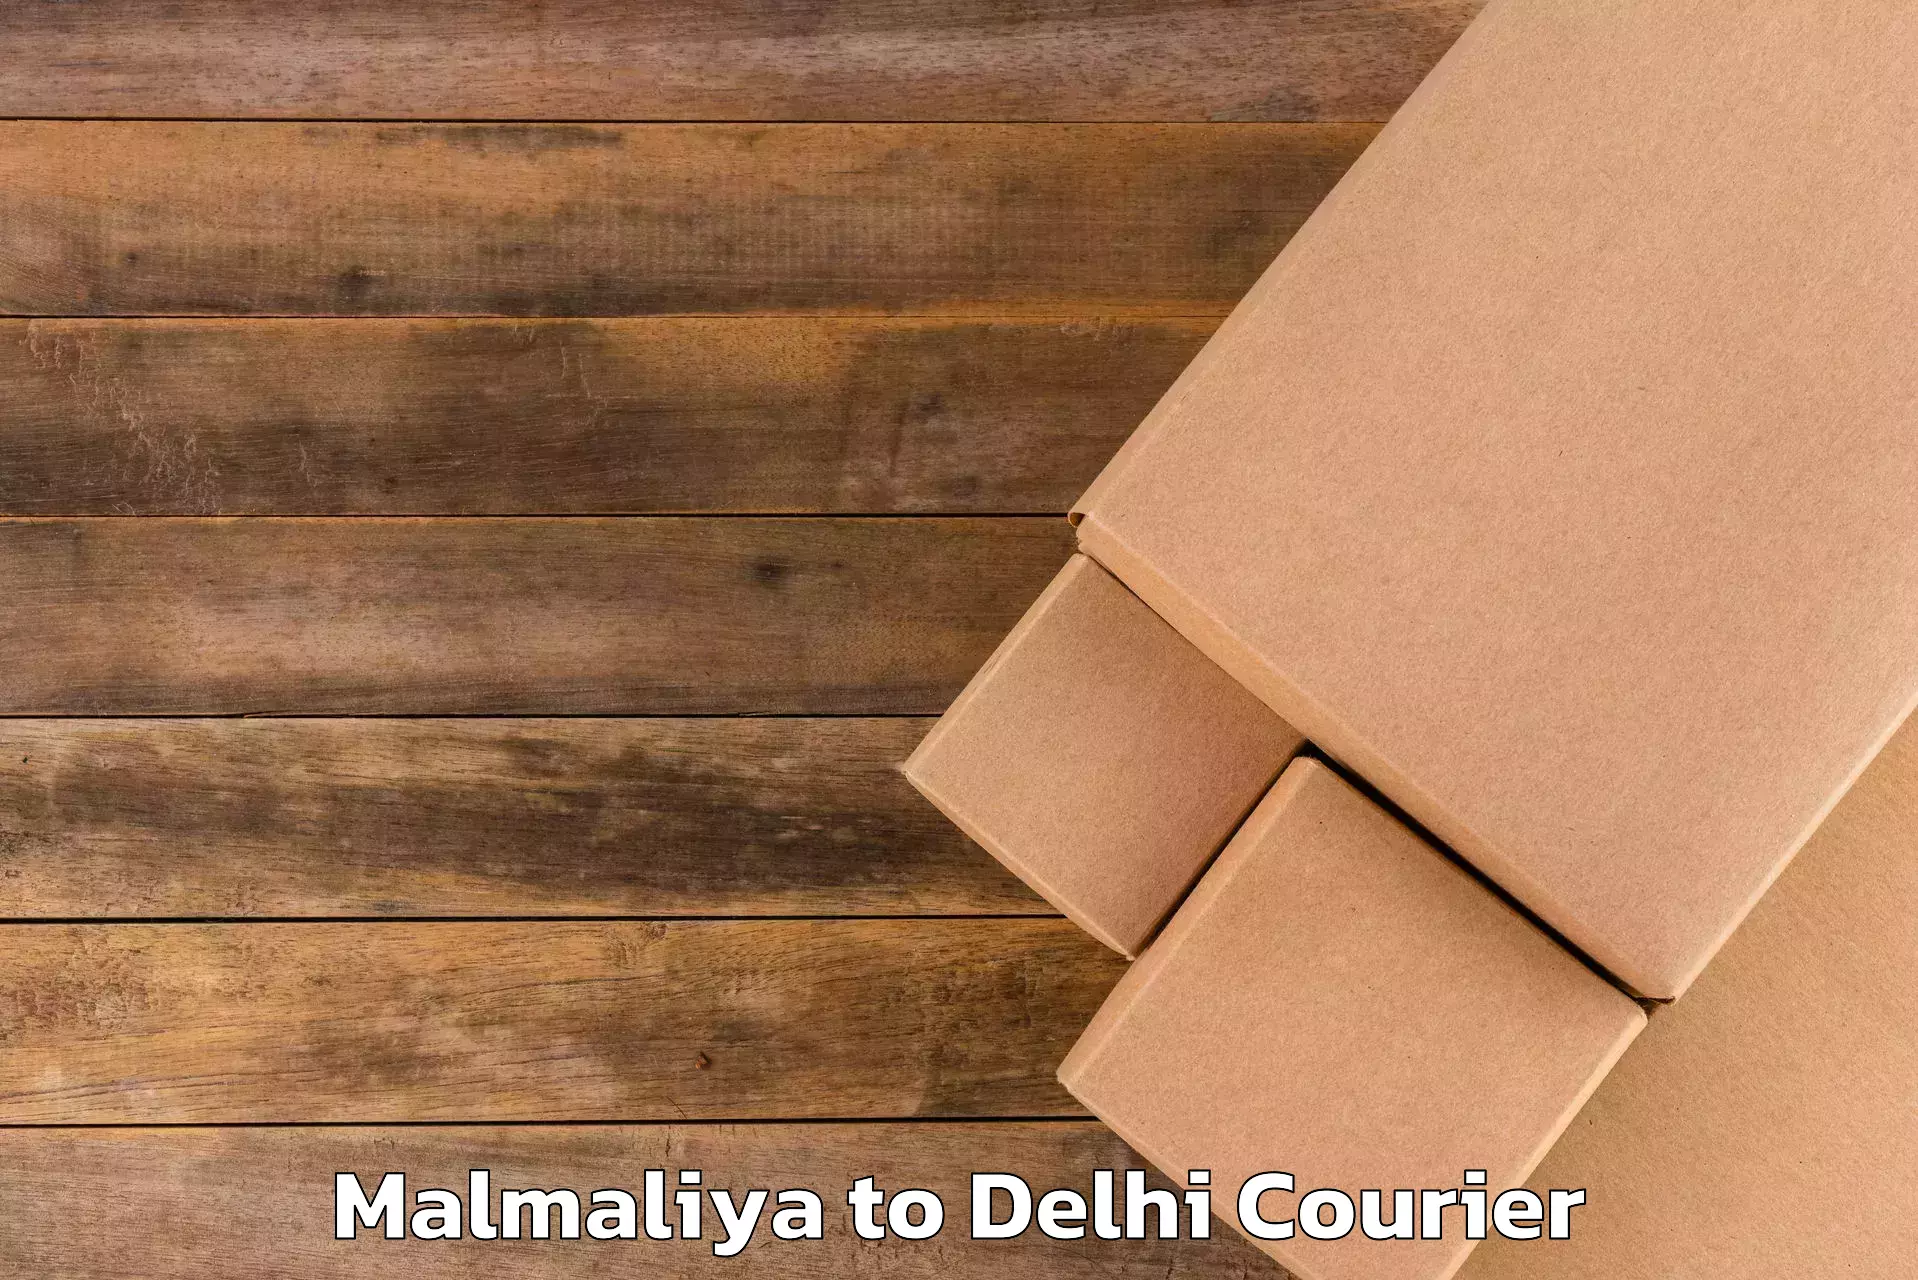 Baggage shipping quotes Malmaliya to Lodhi Road